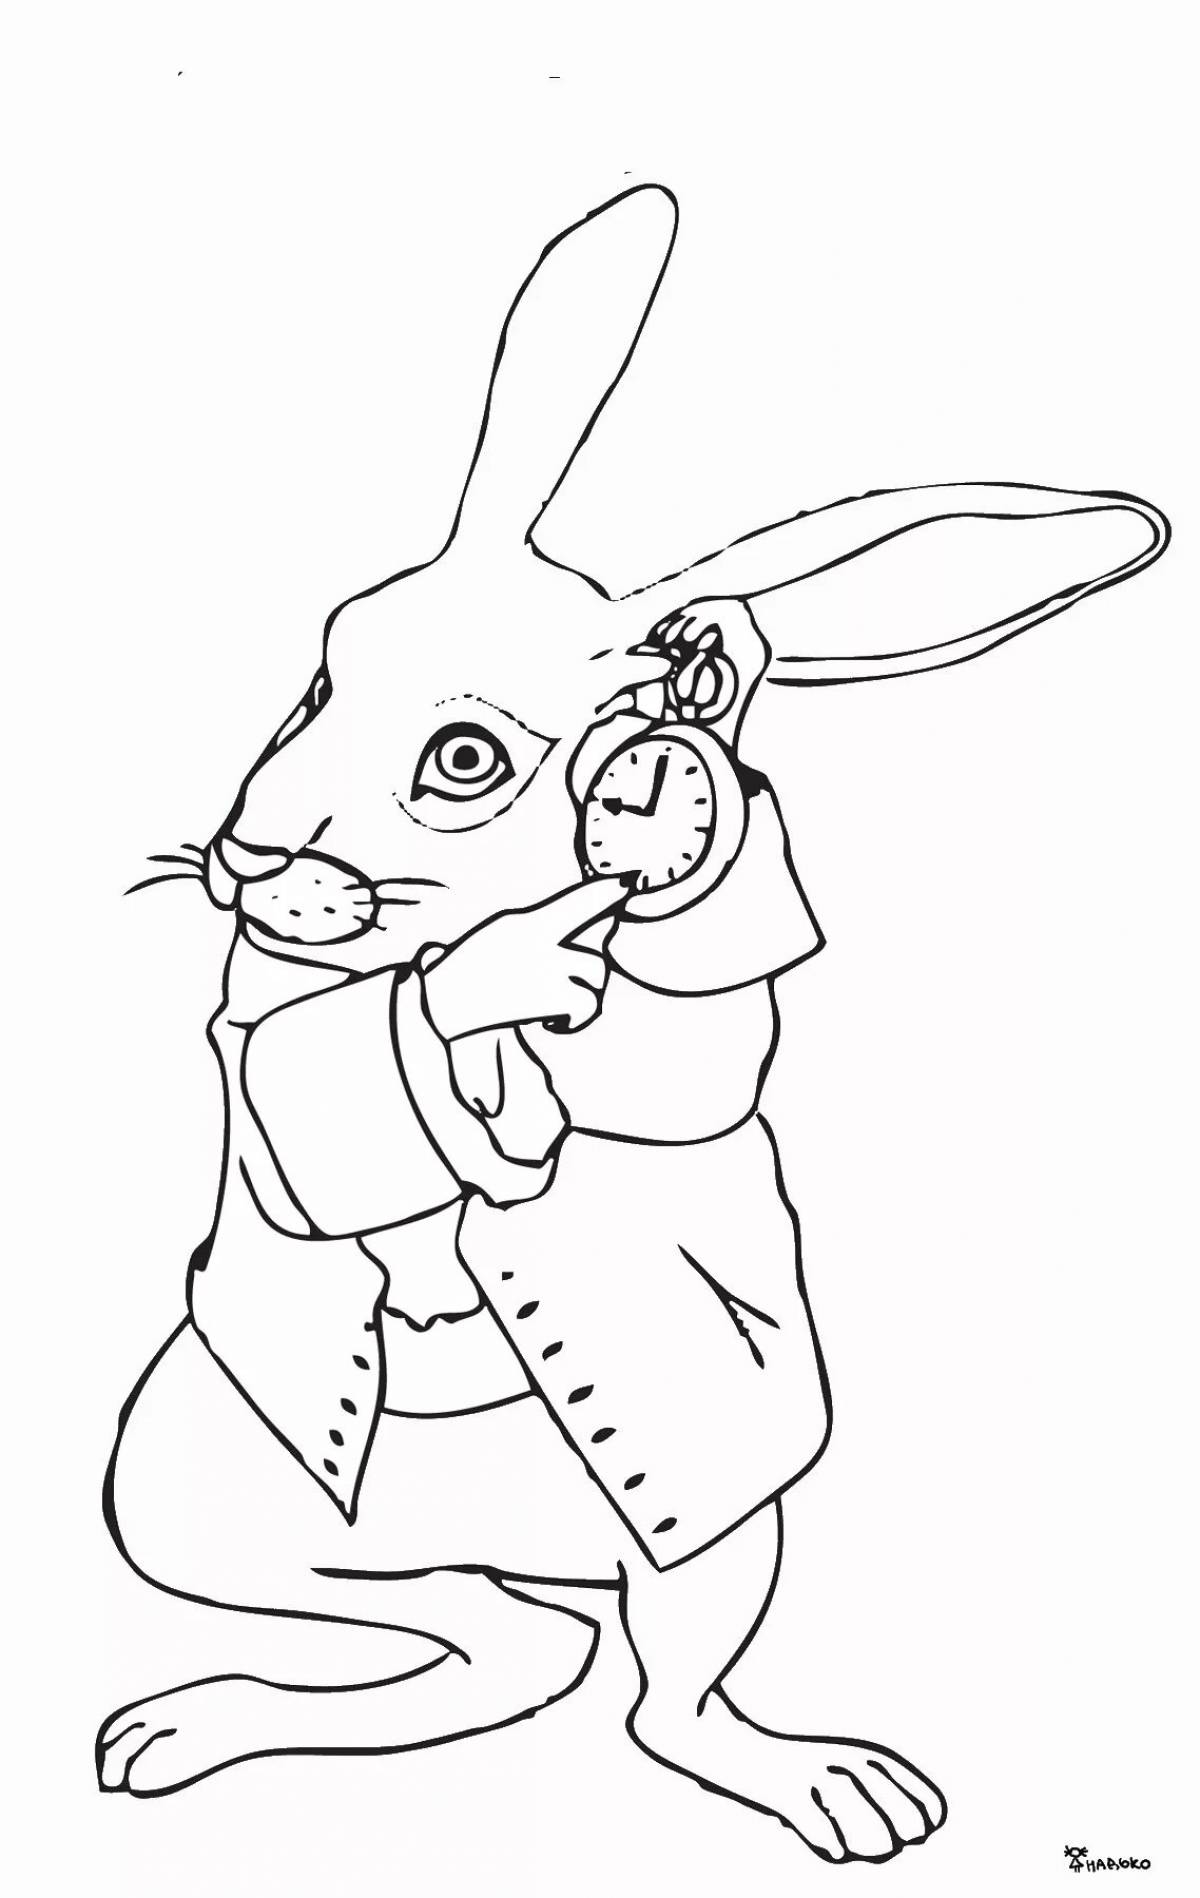 Кролик из алисы в стране чудес #14